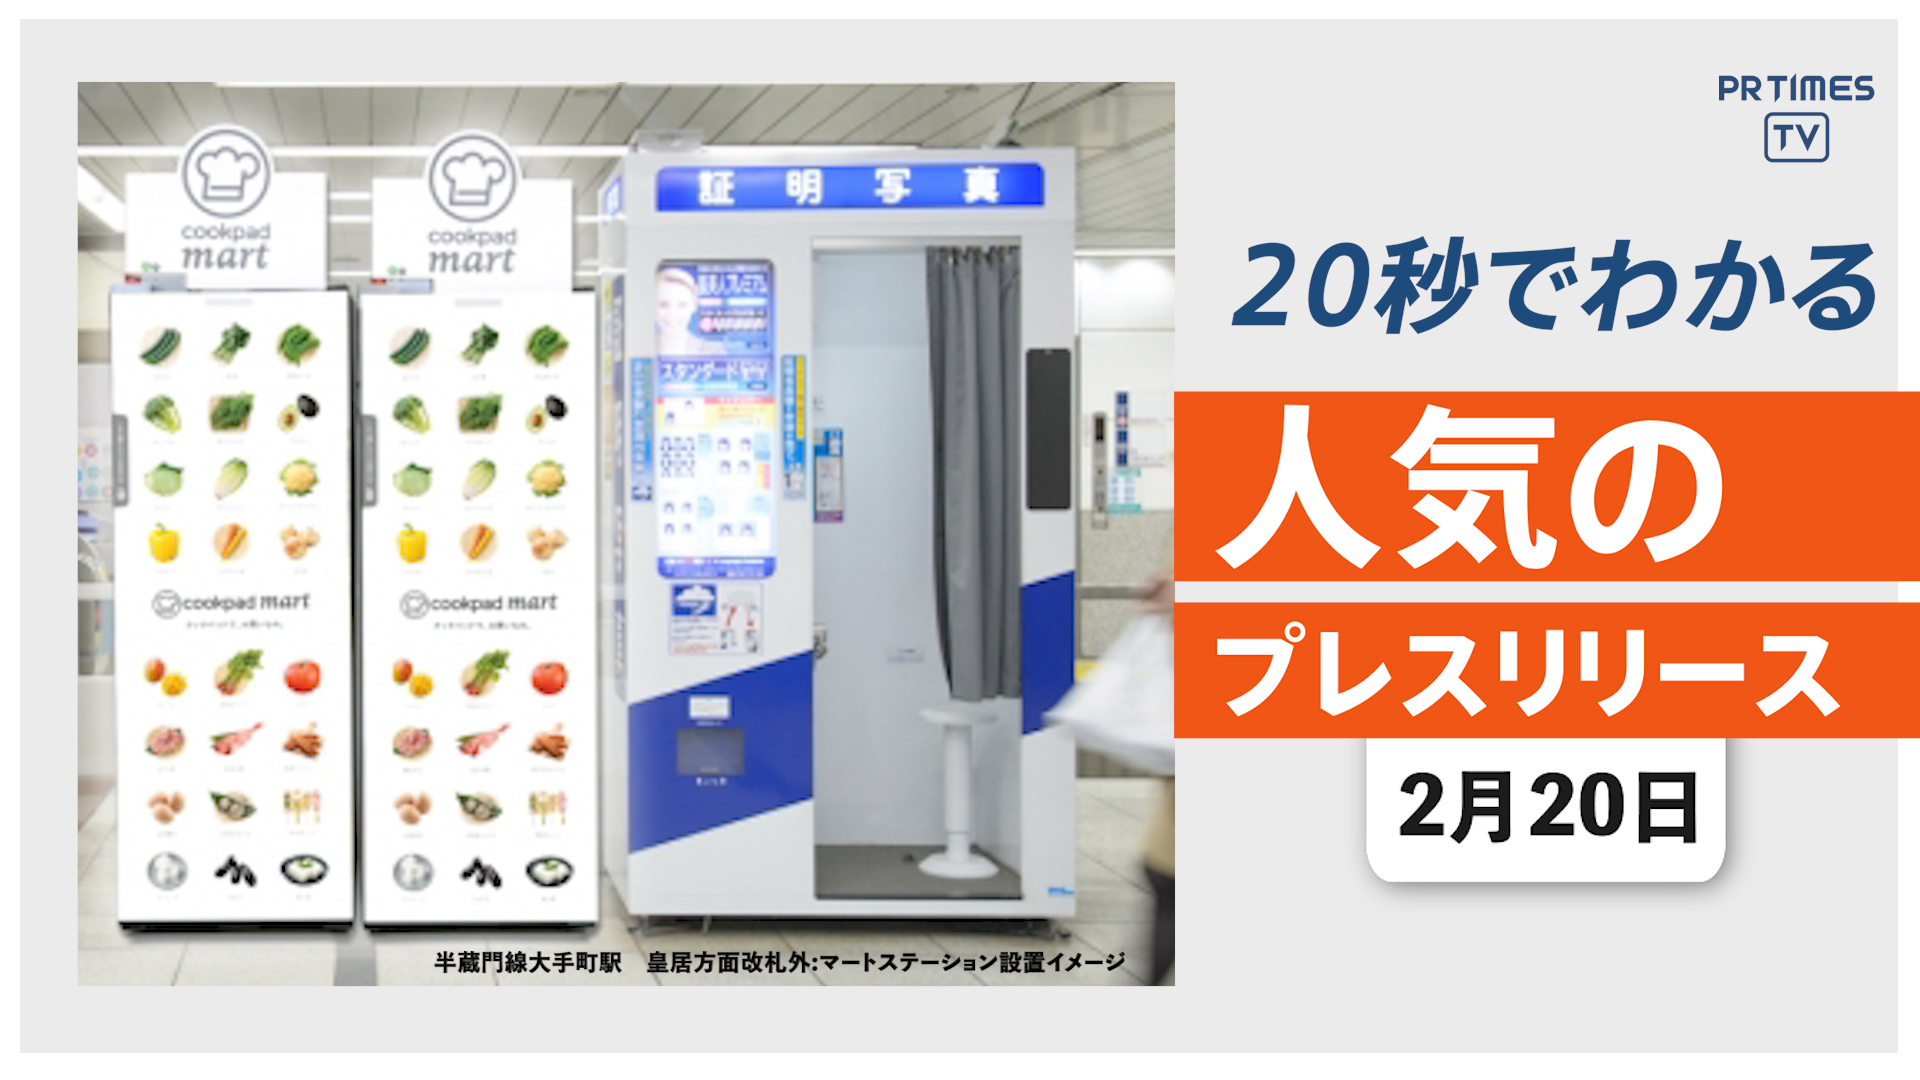 【生鮮食品EC「クックパッドマート」東京メトロ構内に導入】他、新着トレンド2月20日